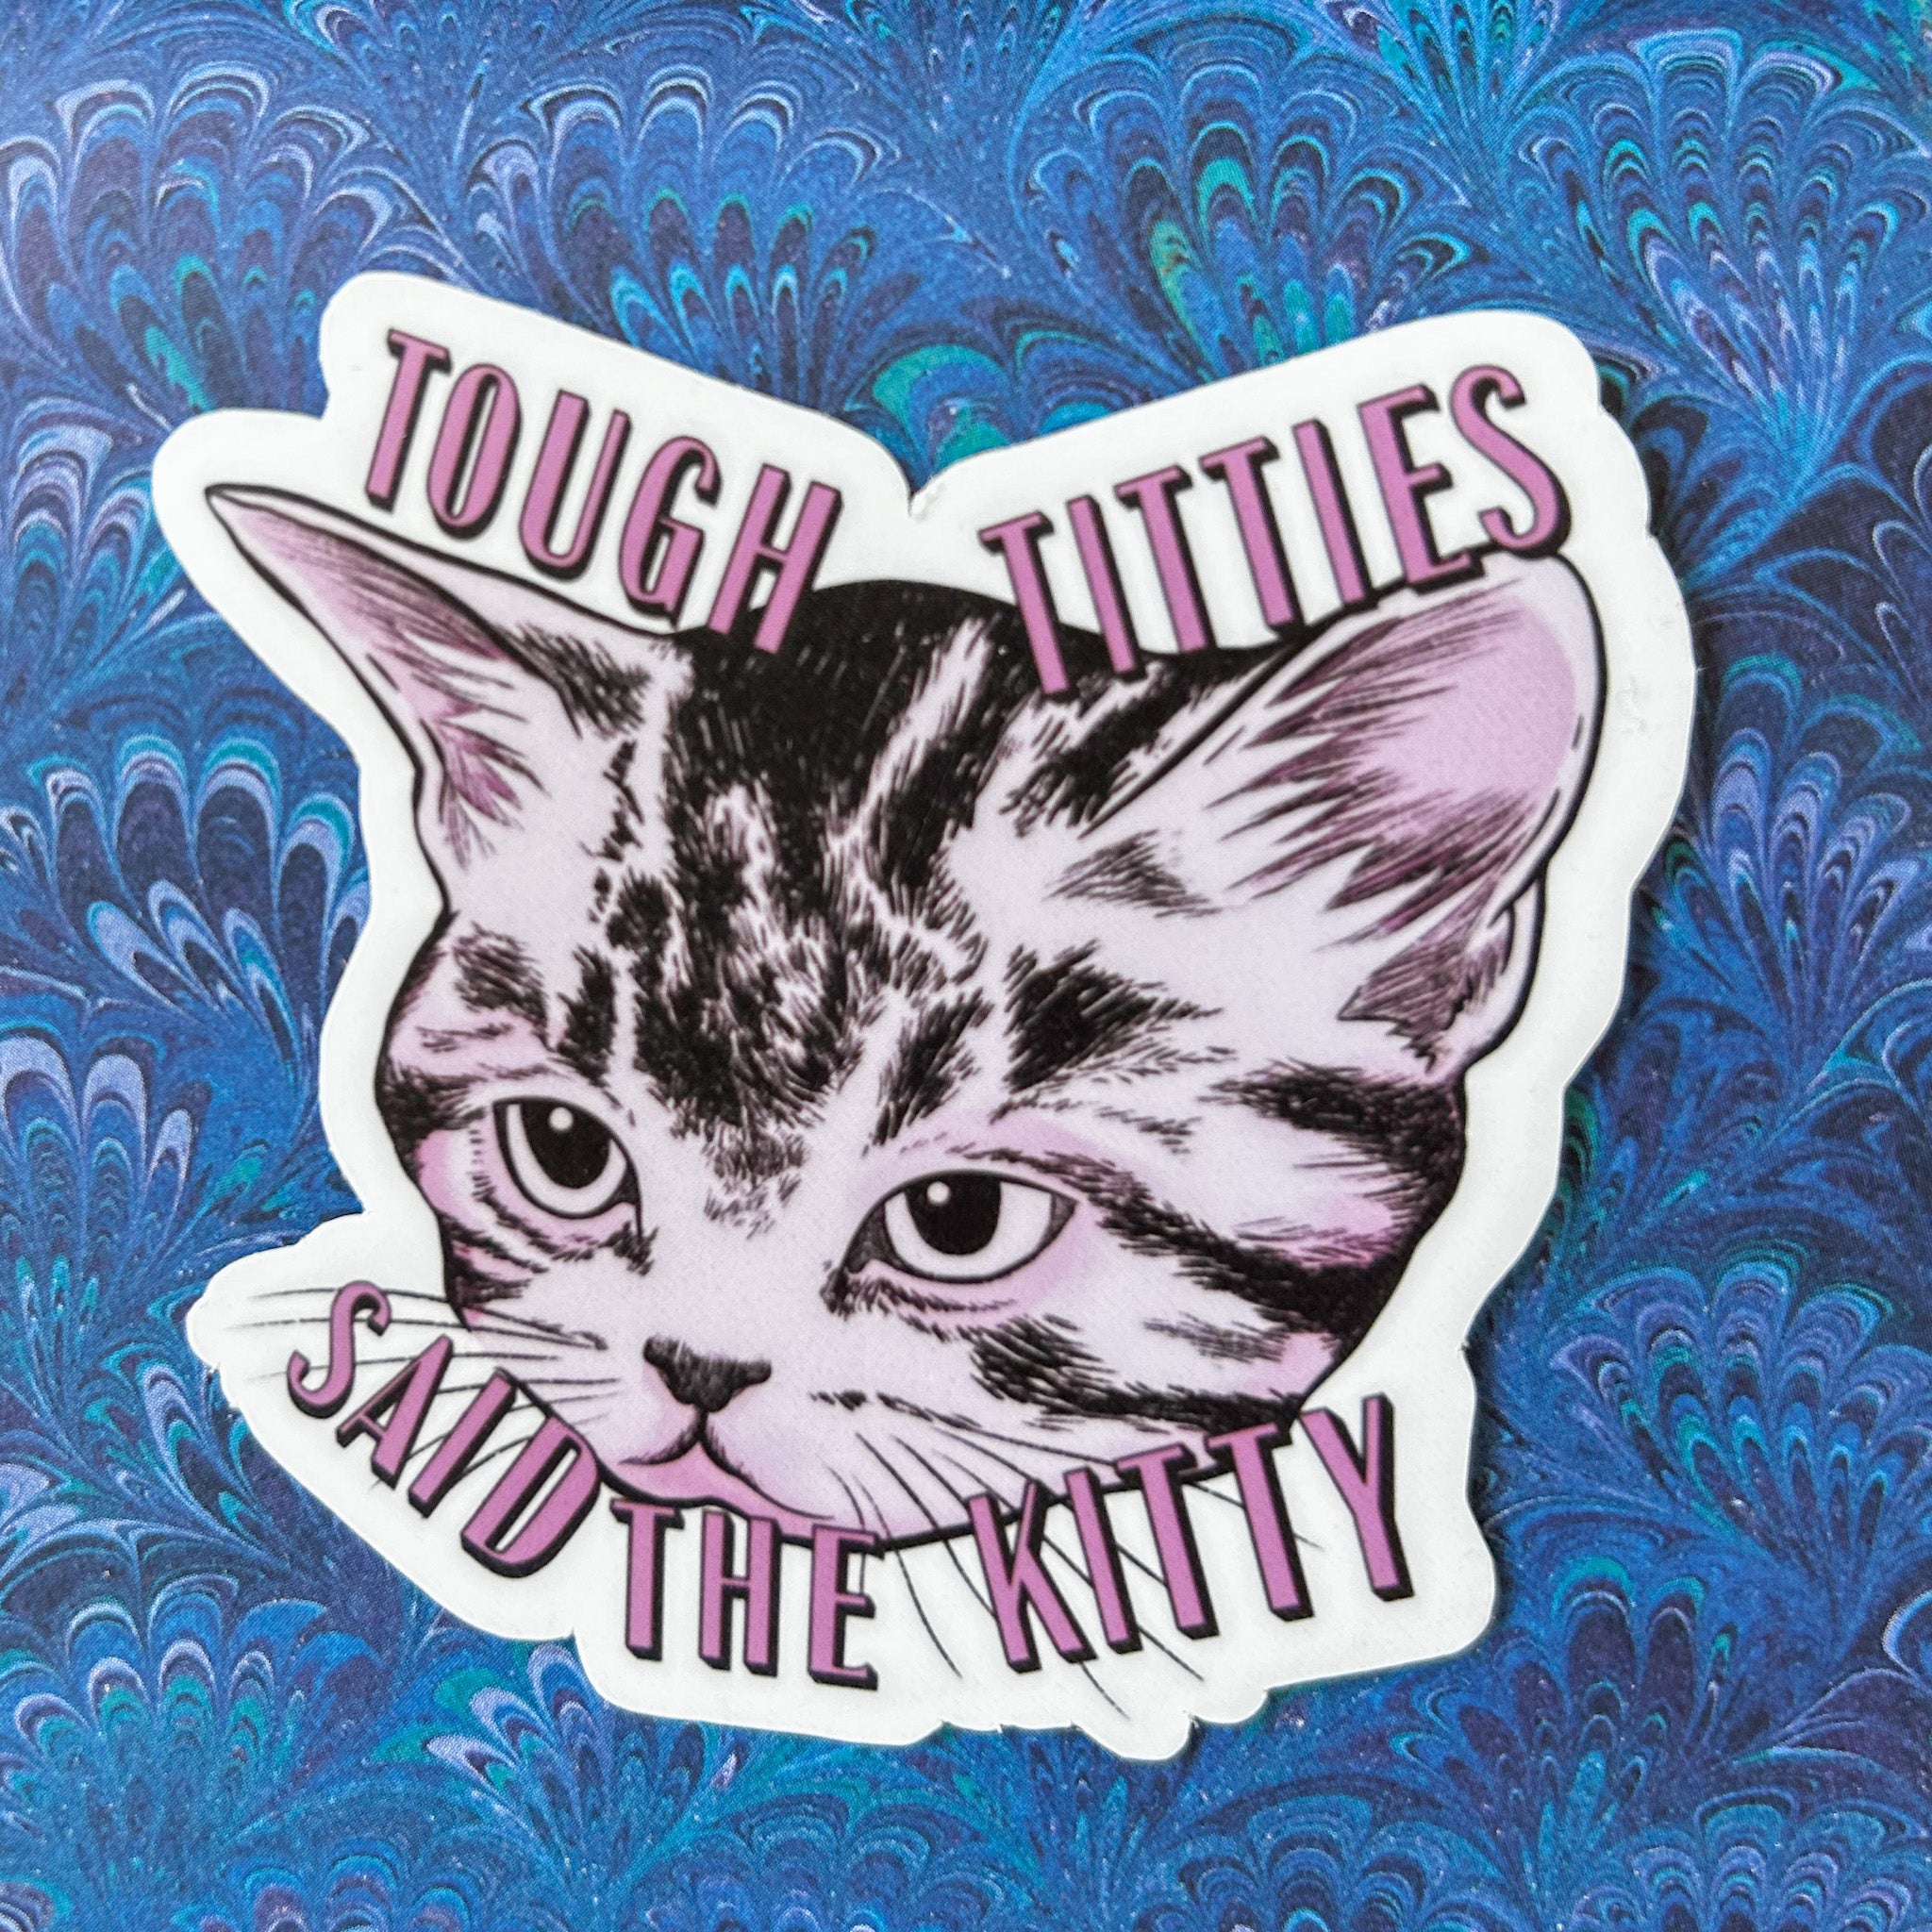 Tough Titties Said the Kitty Sticker